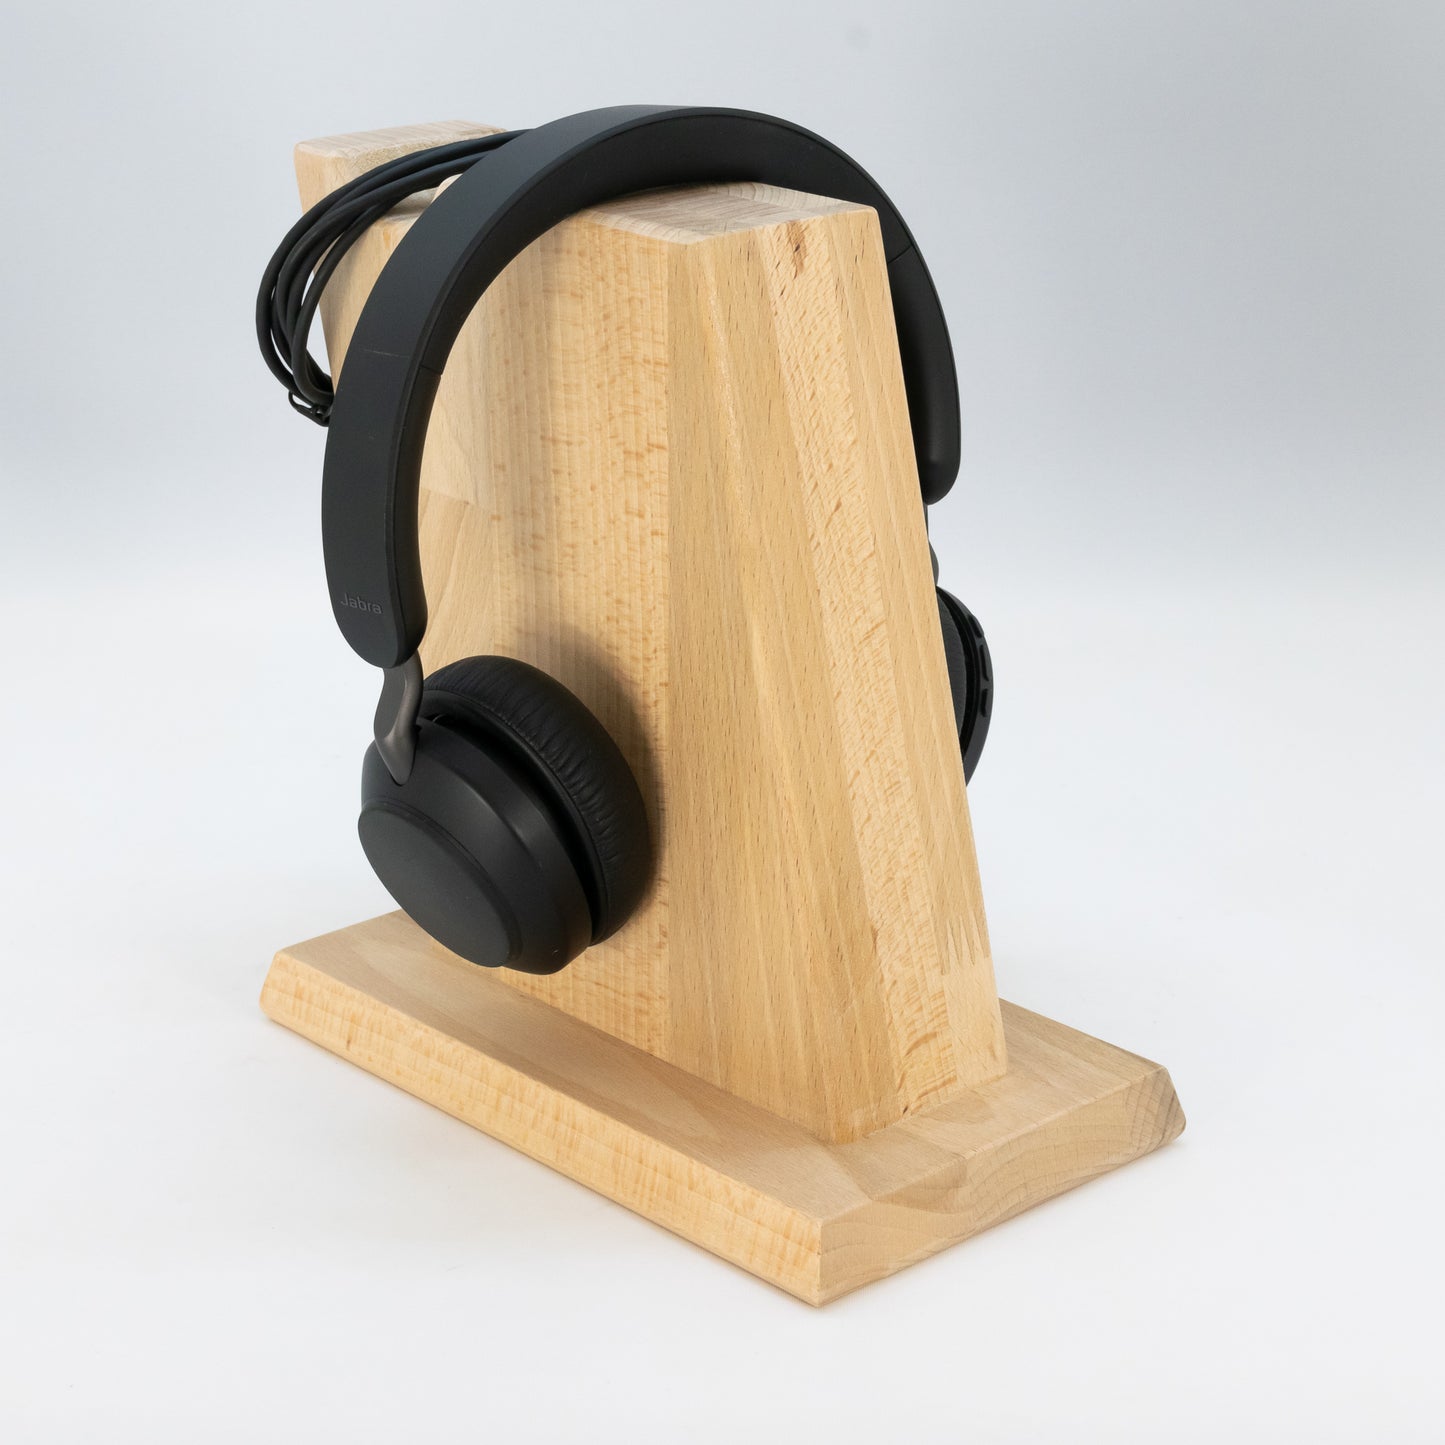 Kopfhörerständer / Kopfhörerhalter "Vintage" aus Massivholz inklusive Kabelhalterung. phonotastisch